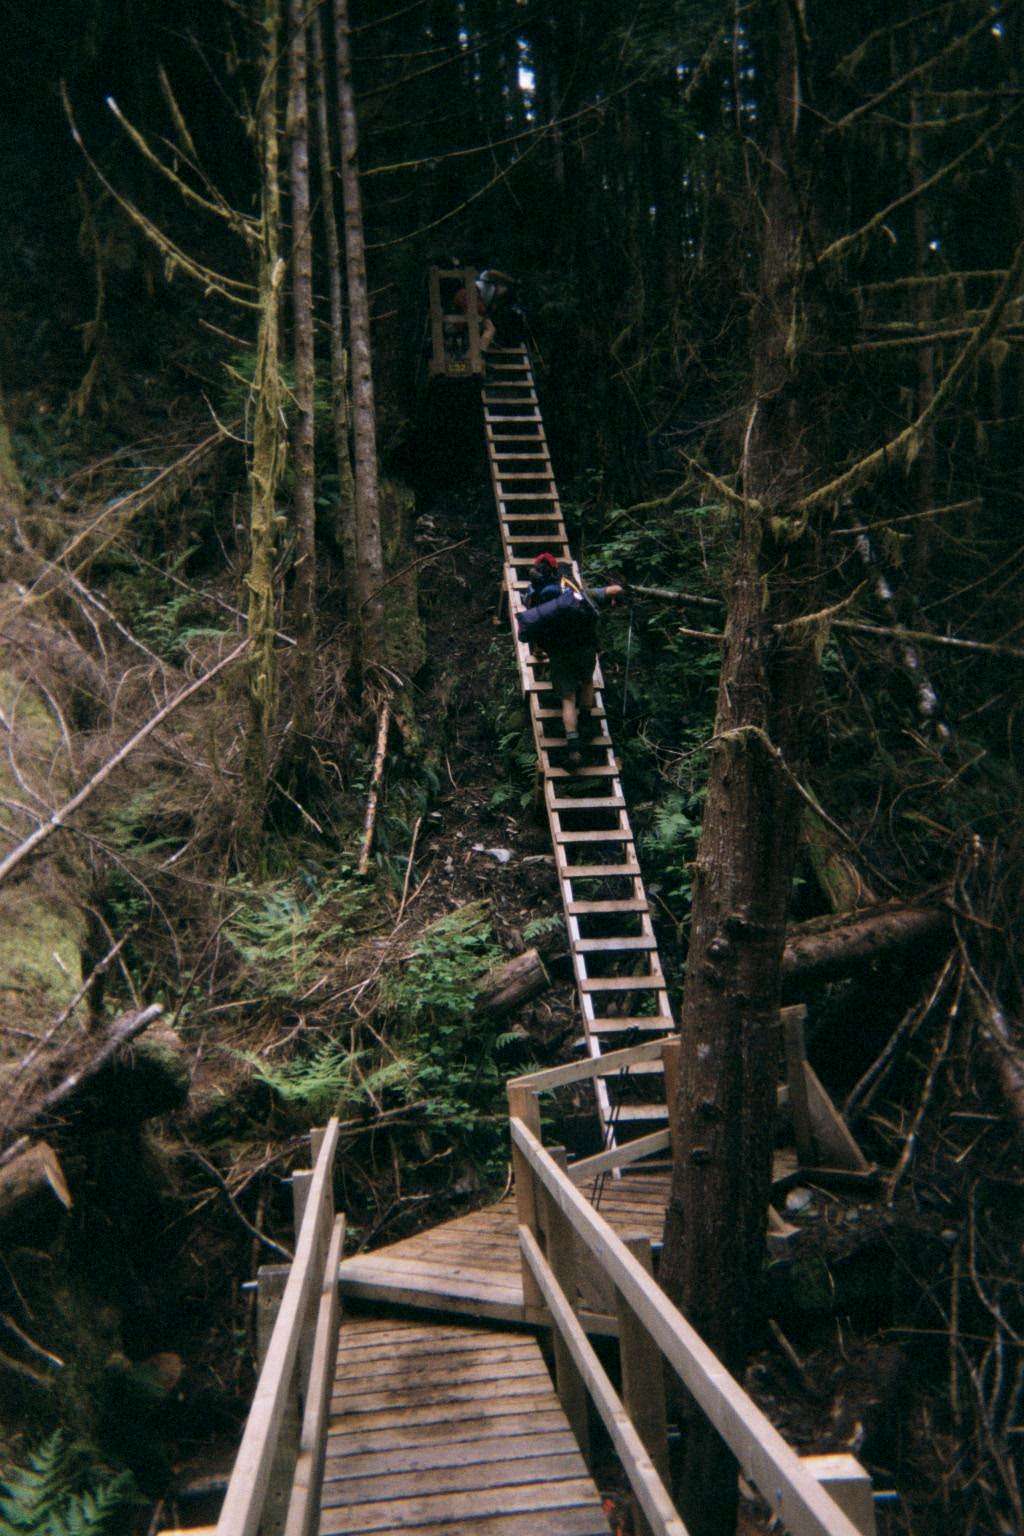 Boardwalk to Ladders